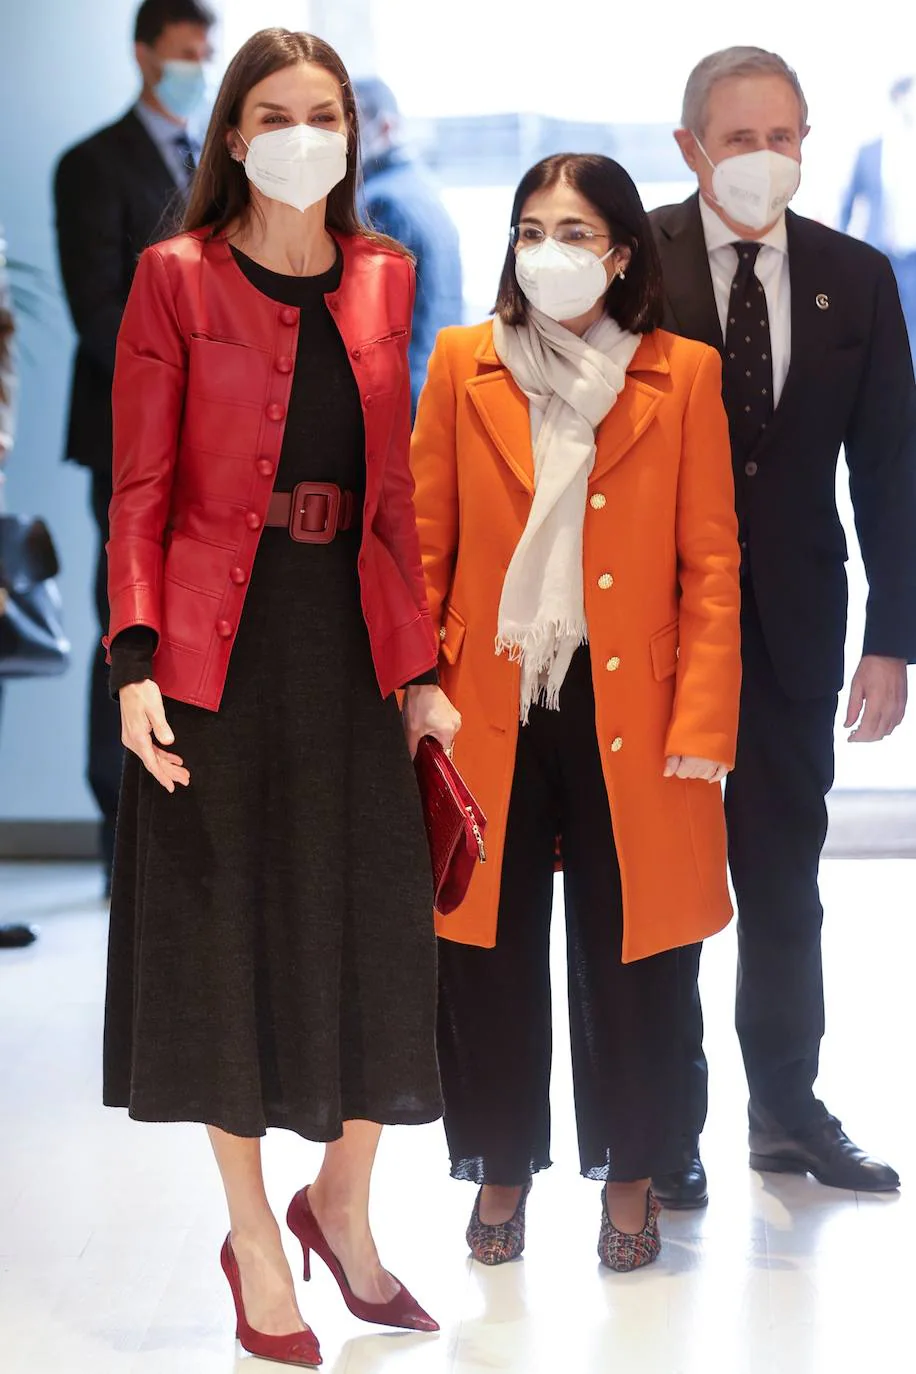 Persistencia Pez anémona gasolina Fotos: La chaqueta de Carolina Herrera de la reina Letizia | Las Provincias